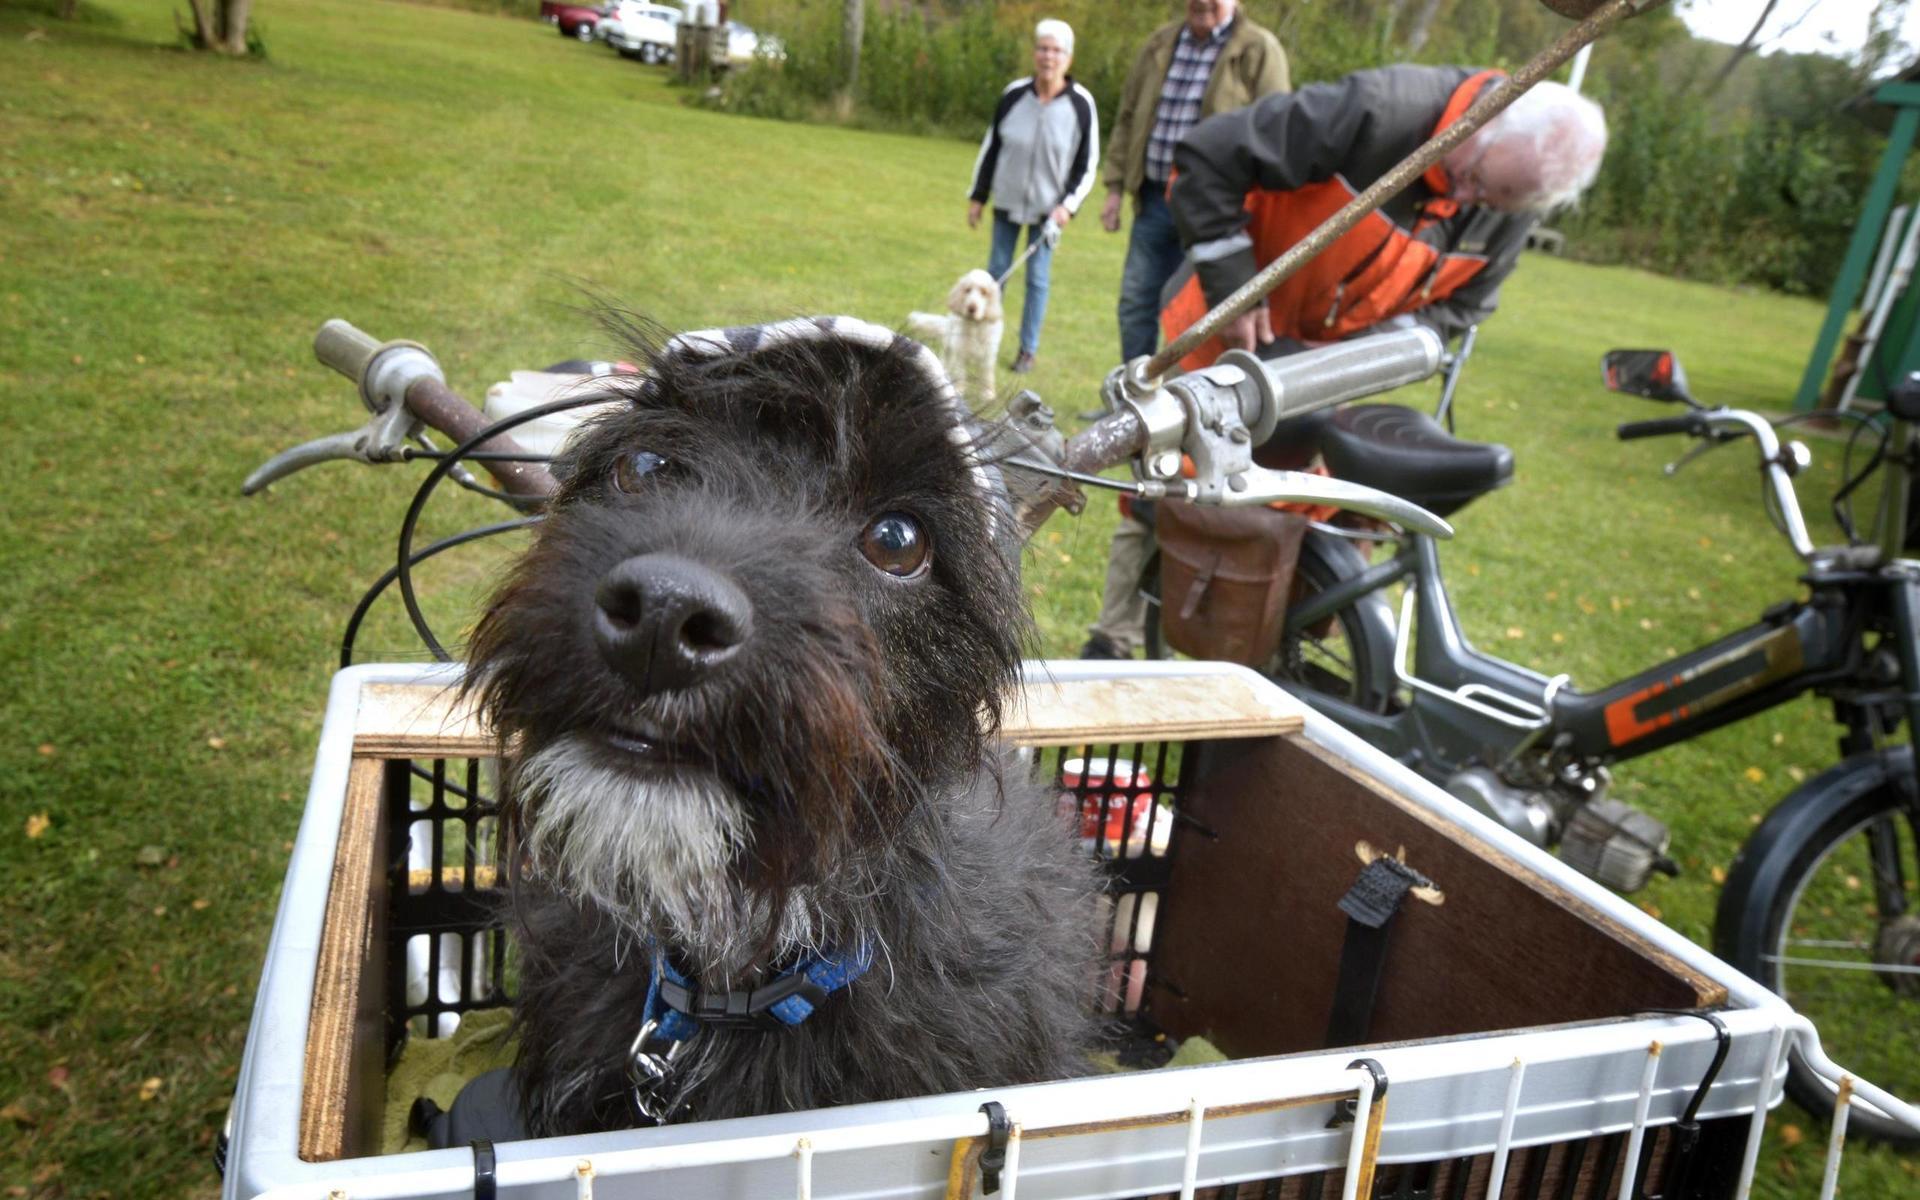 Blandrashunden Elliy hade åkt 11 mil på moped med husse Peter Hansson för att besöka Belis cafe och Nostalgi.